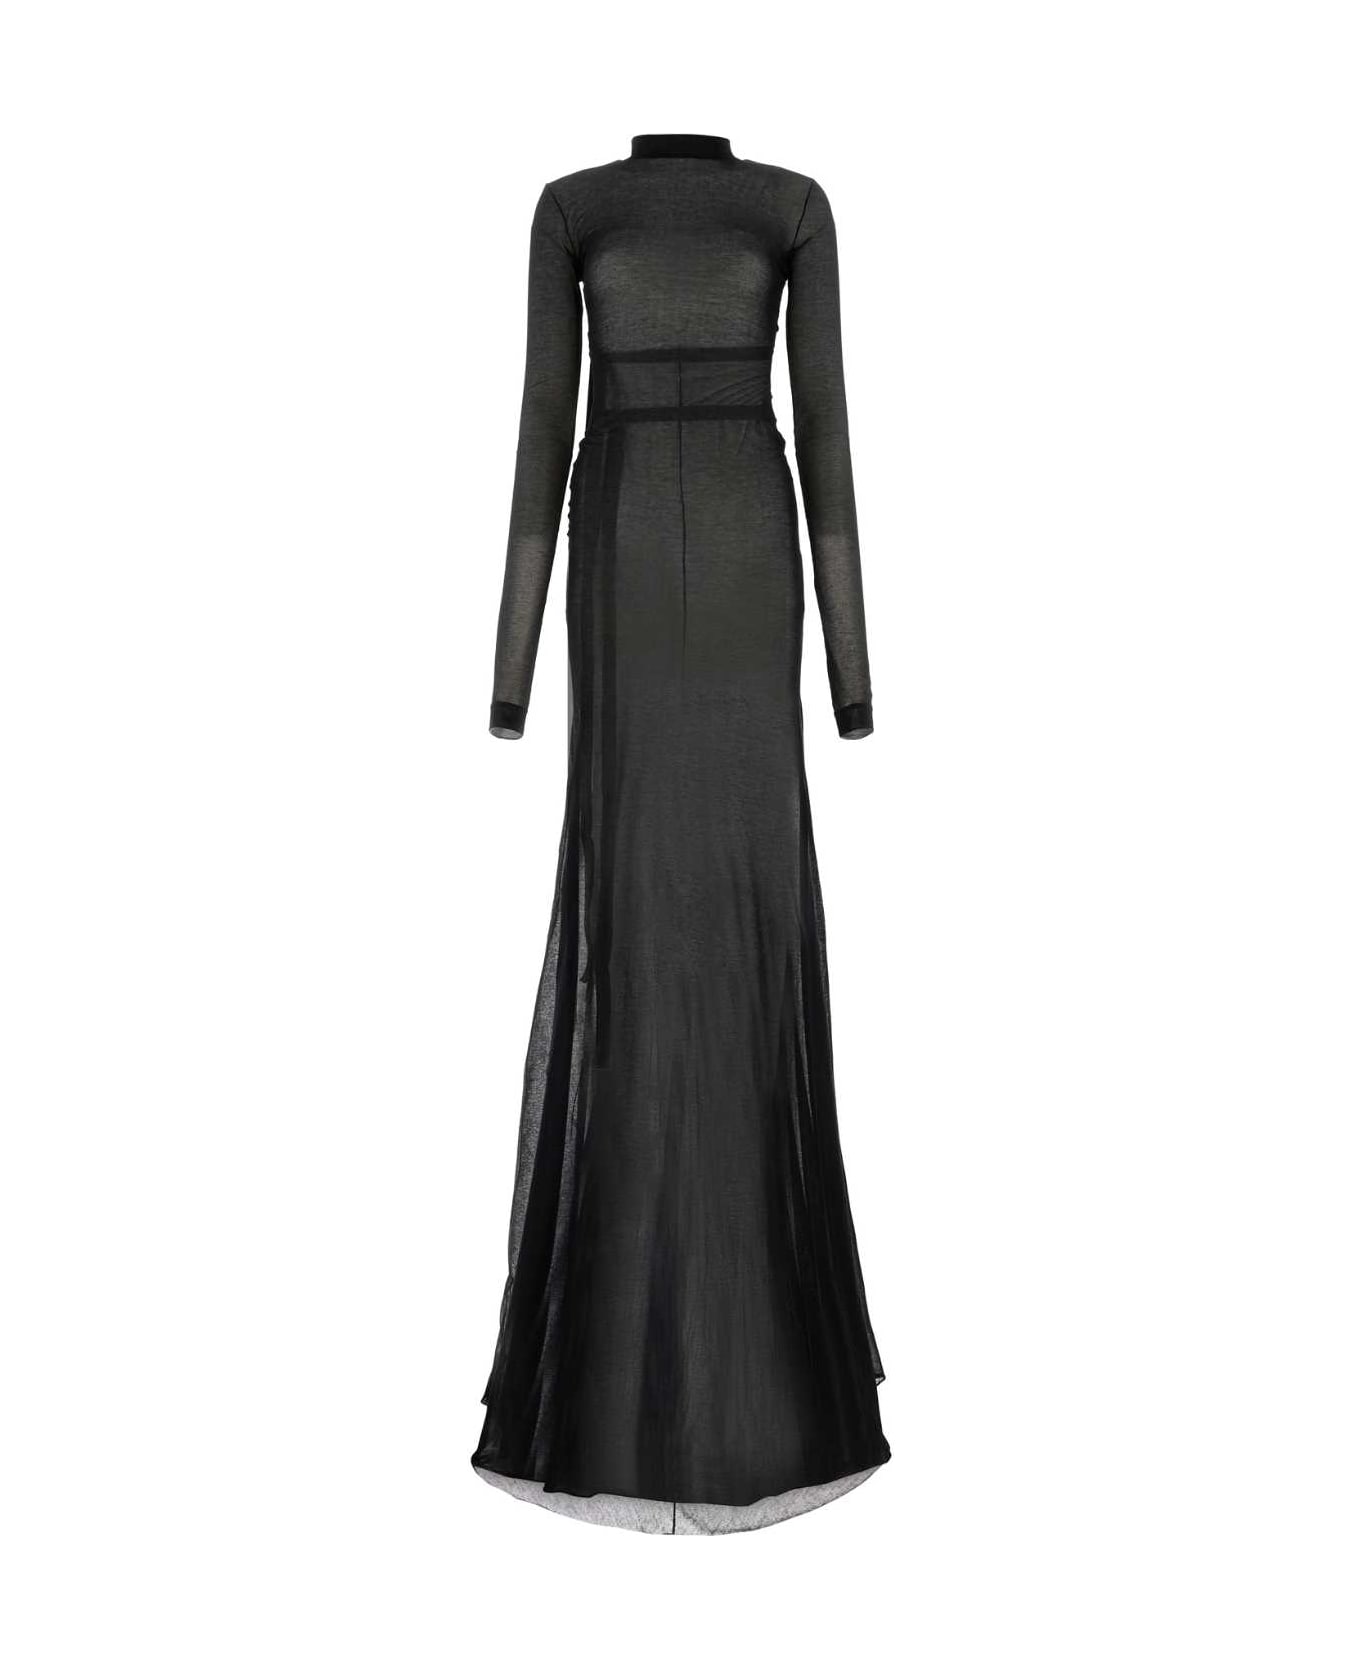 Ann Demeulemeester Black Cotton Blend Long Dress - 099